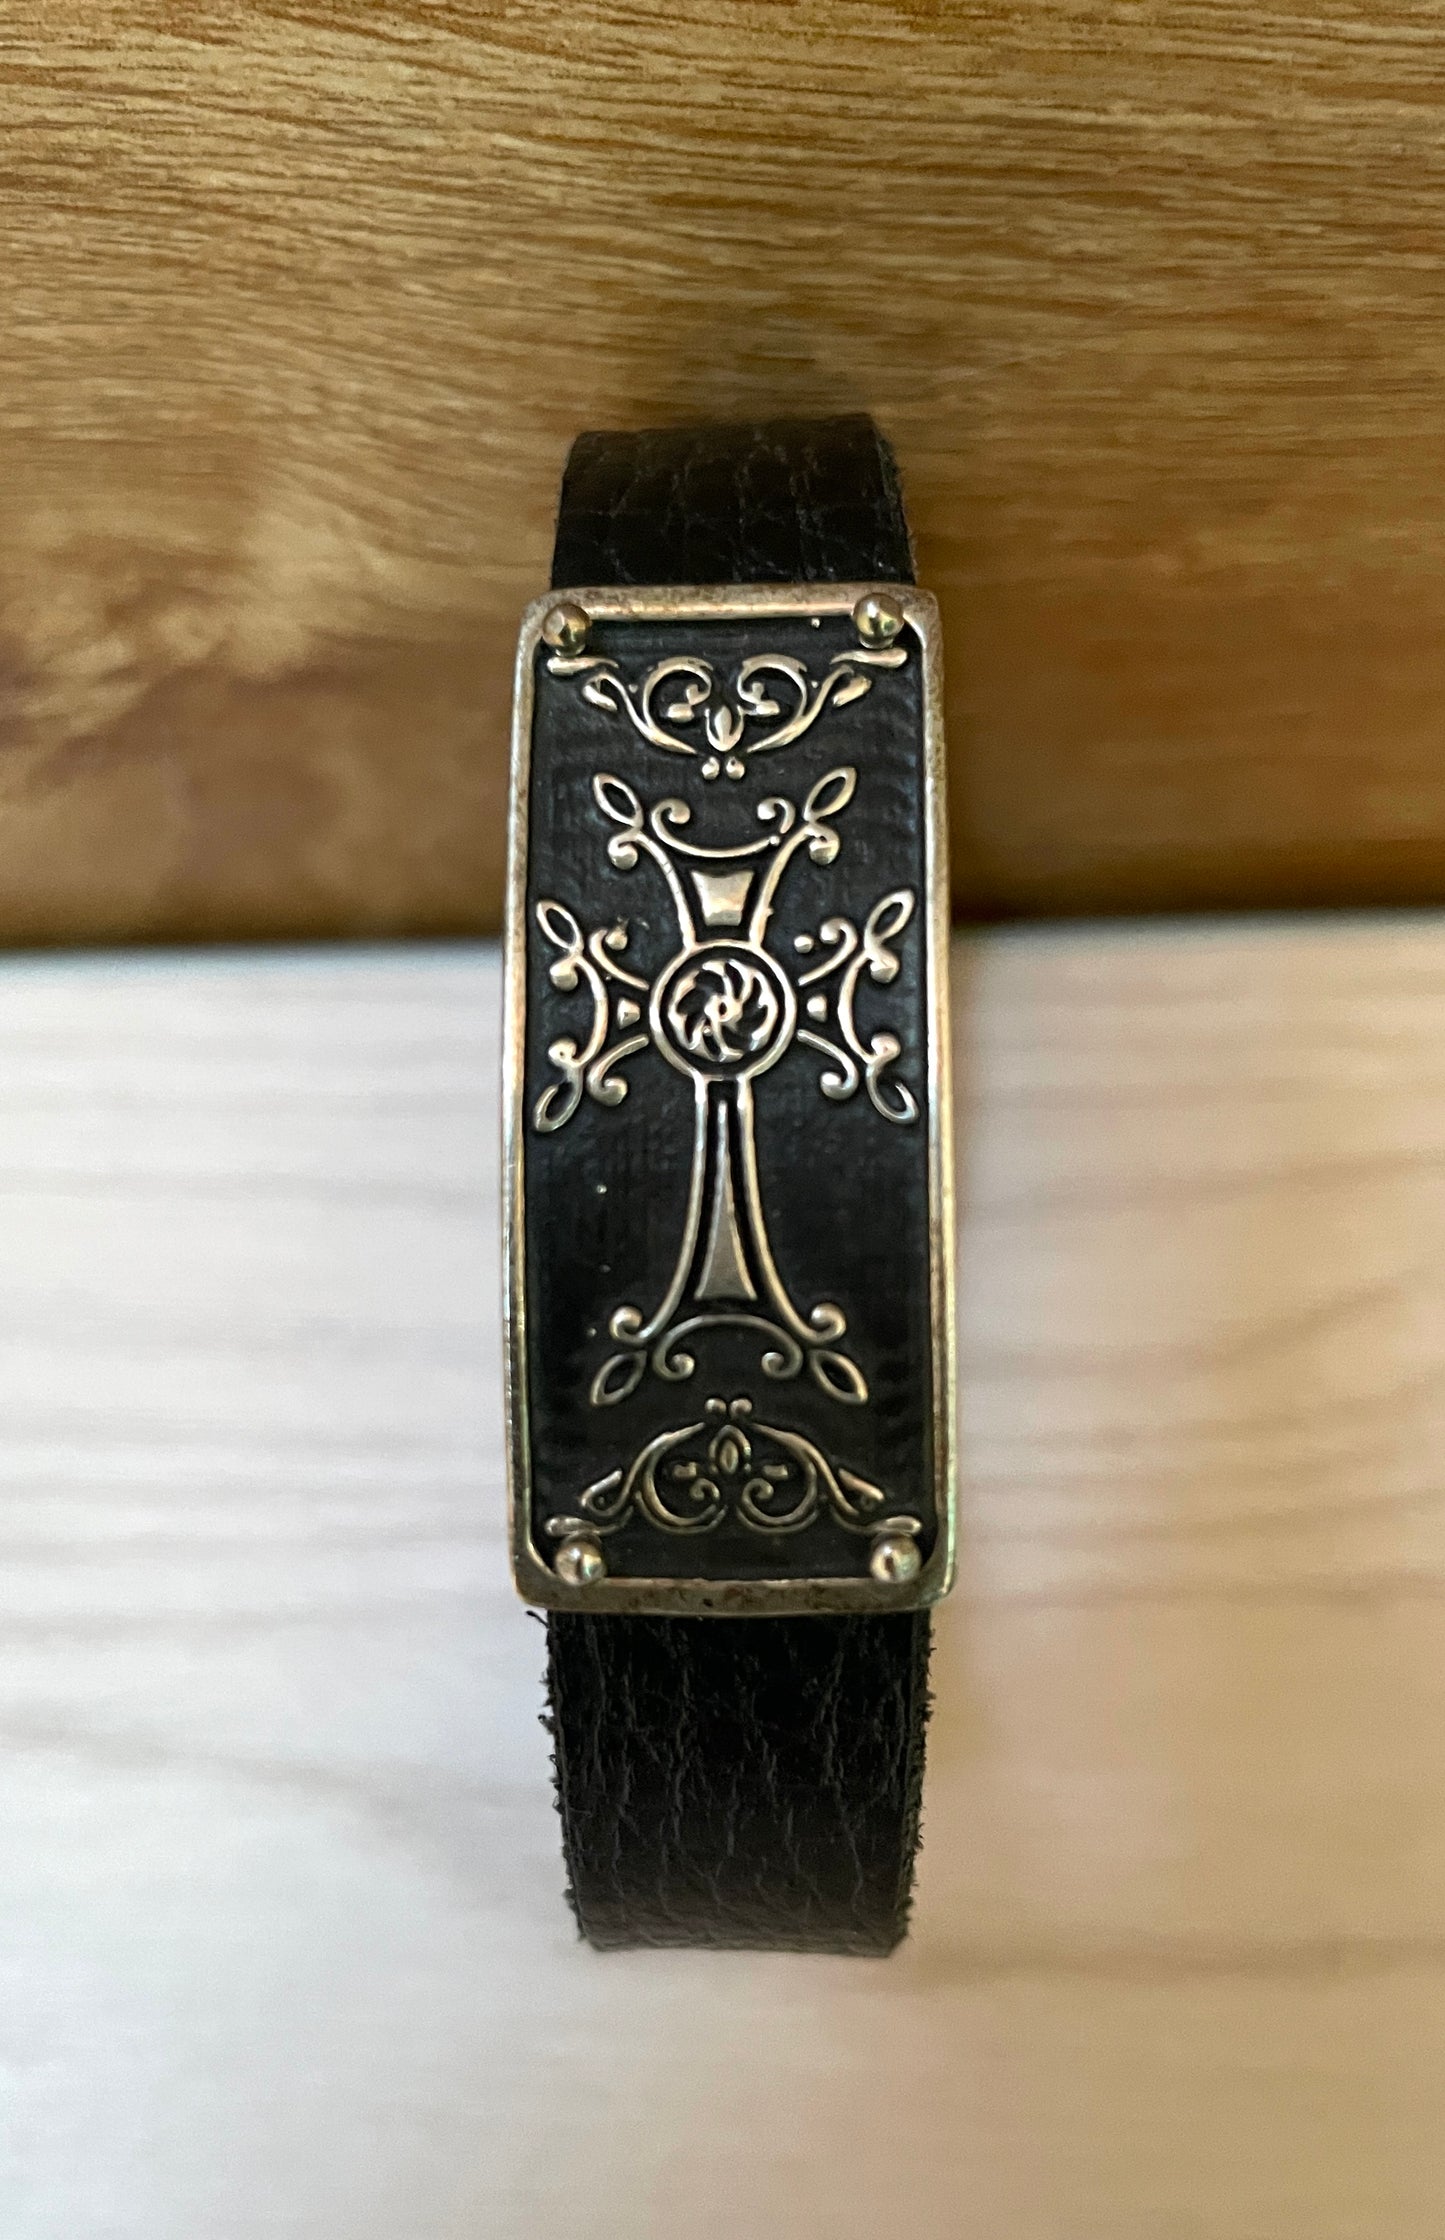 Armenian Cross Khachkar Bracelet 925 Sterling Silver & Leather